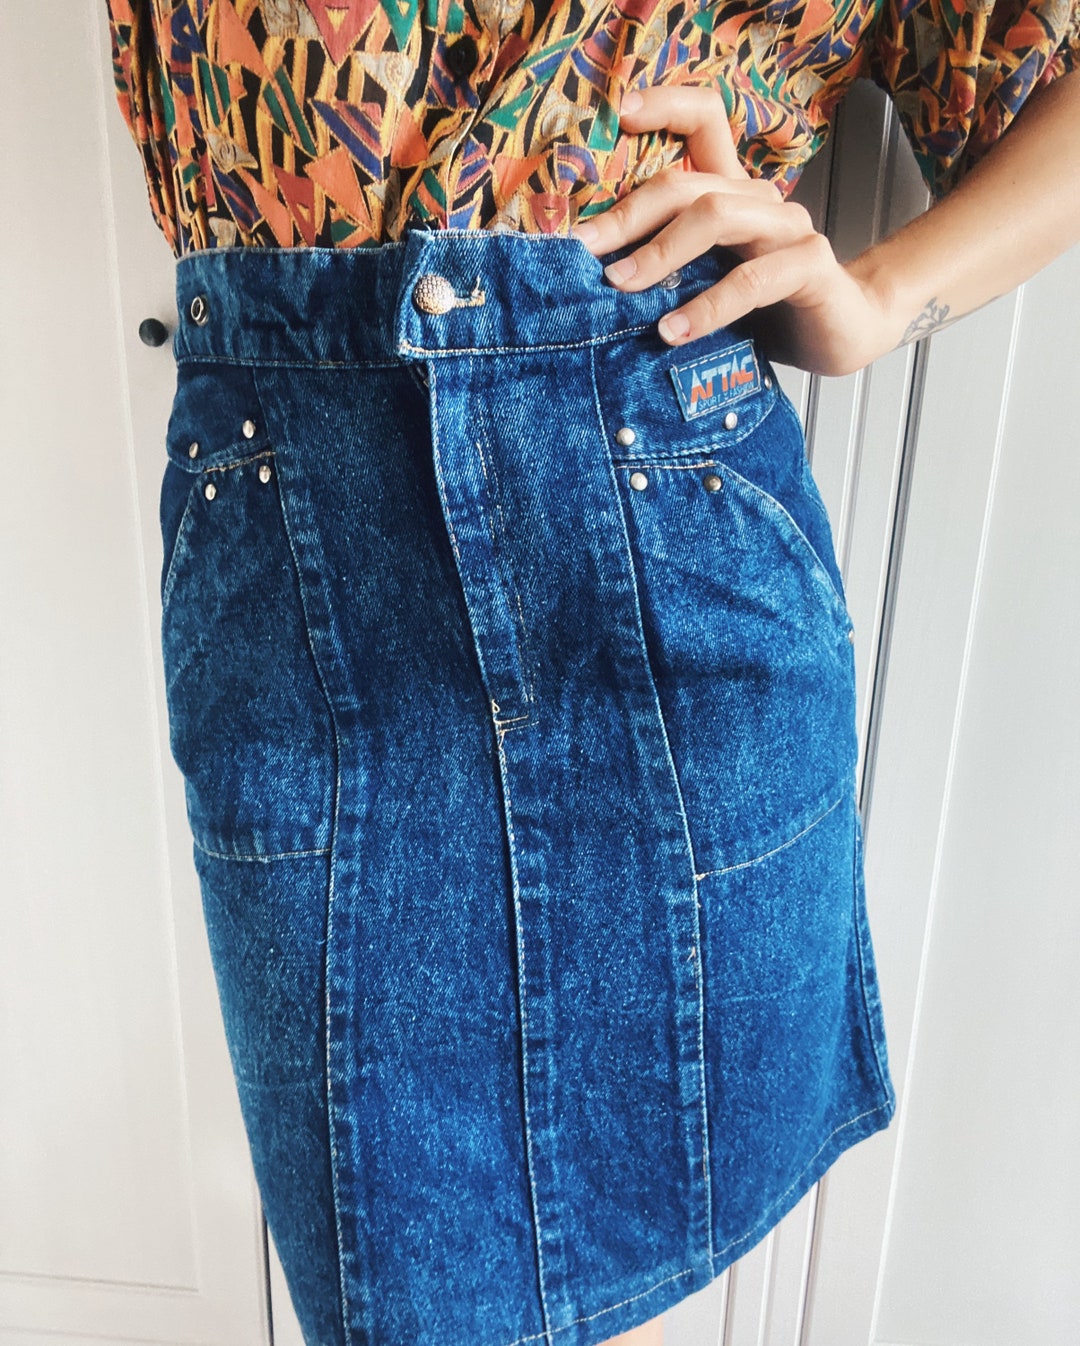 Blue Denim Skirt 80s Tulip Midi Jean Skirt in Size Medium - Etsy